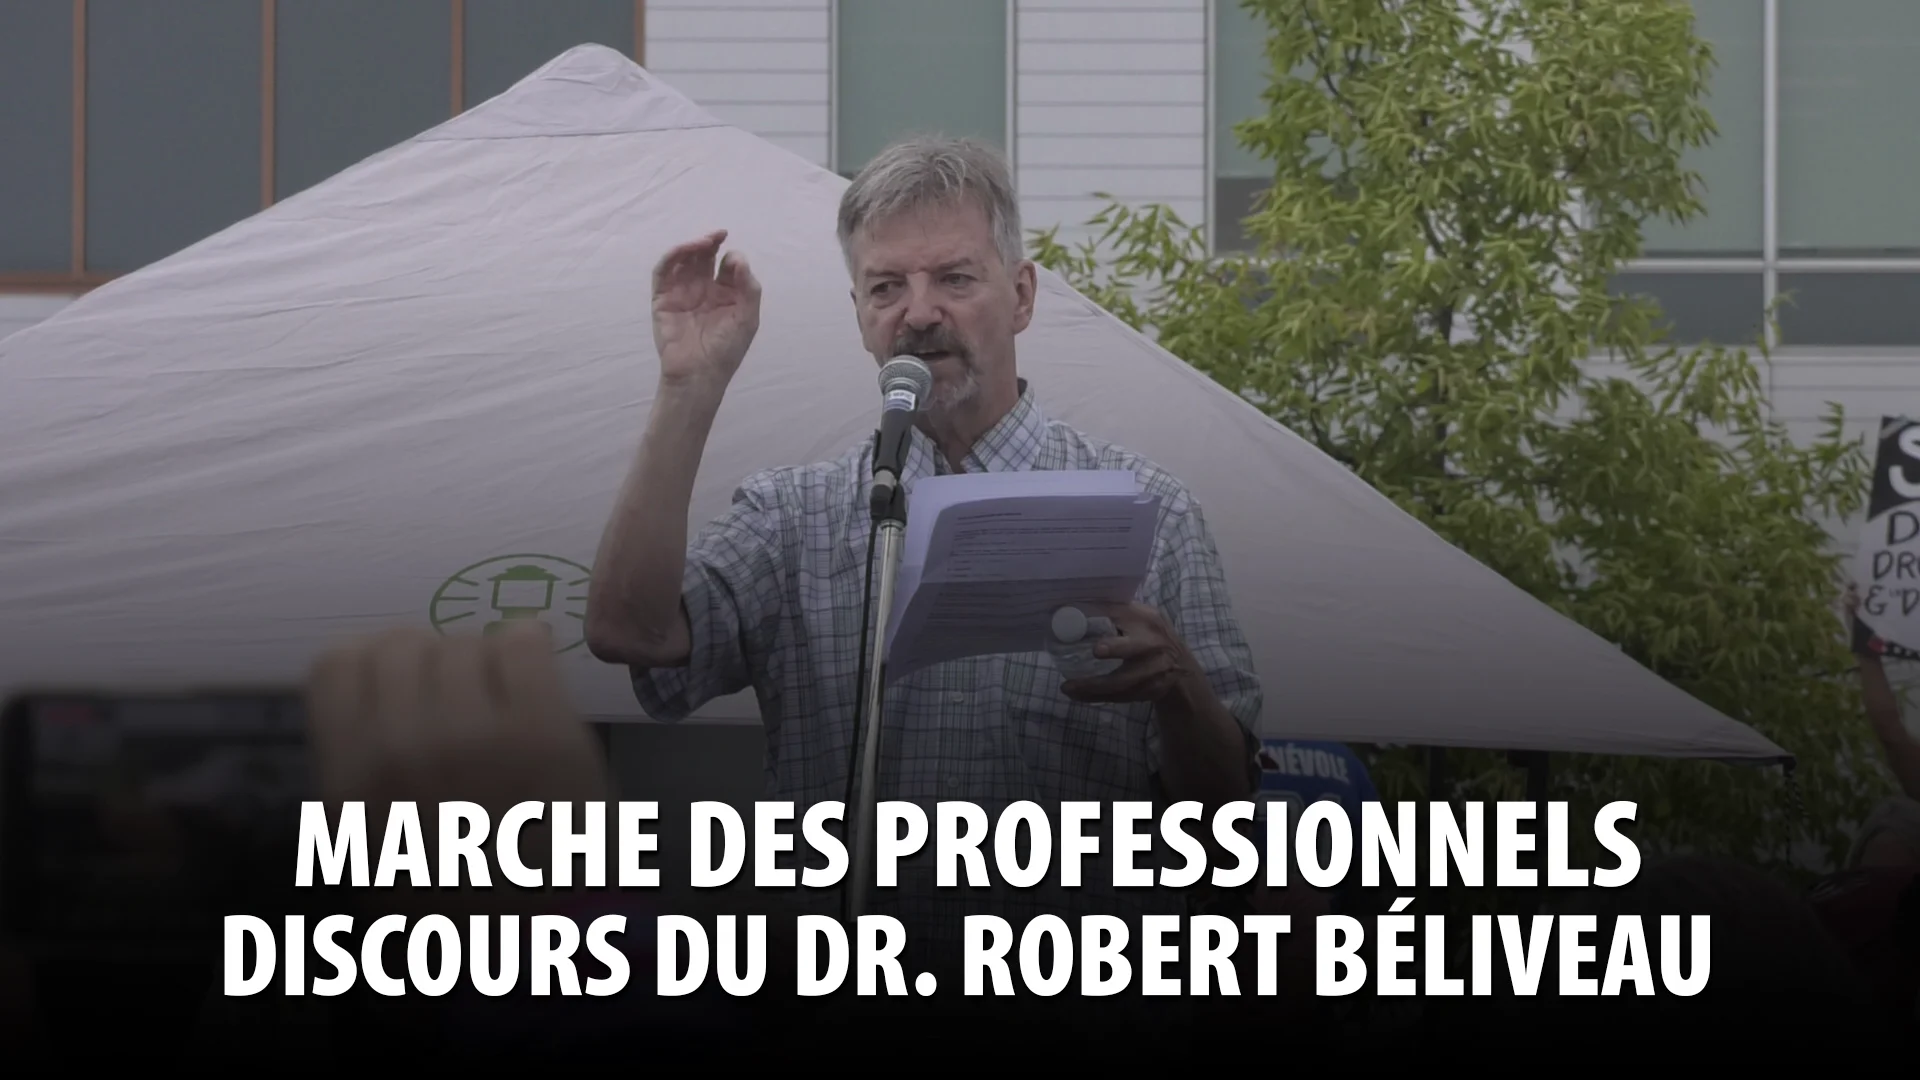 MARCHE DES PROFESSIONNELS MONTRÉAL – DISCOURS DU DR. ROBERT BÉLIVEAU